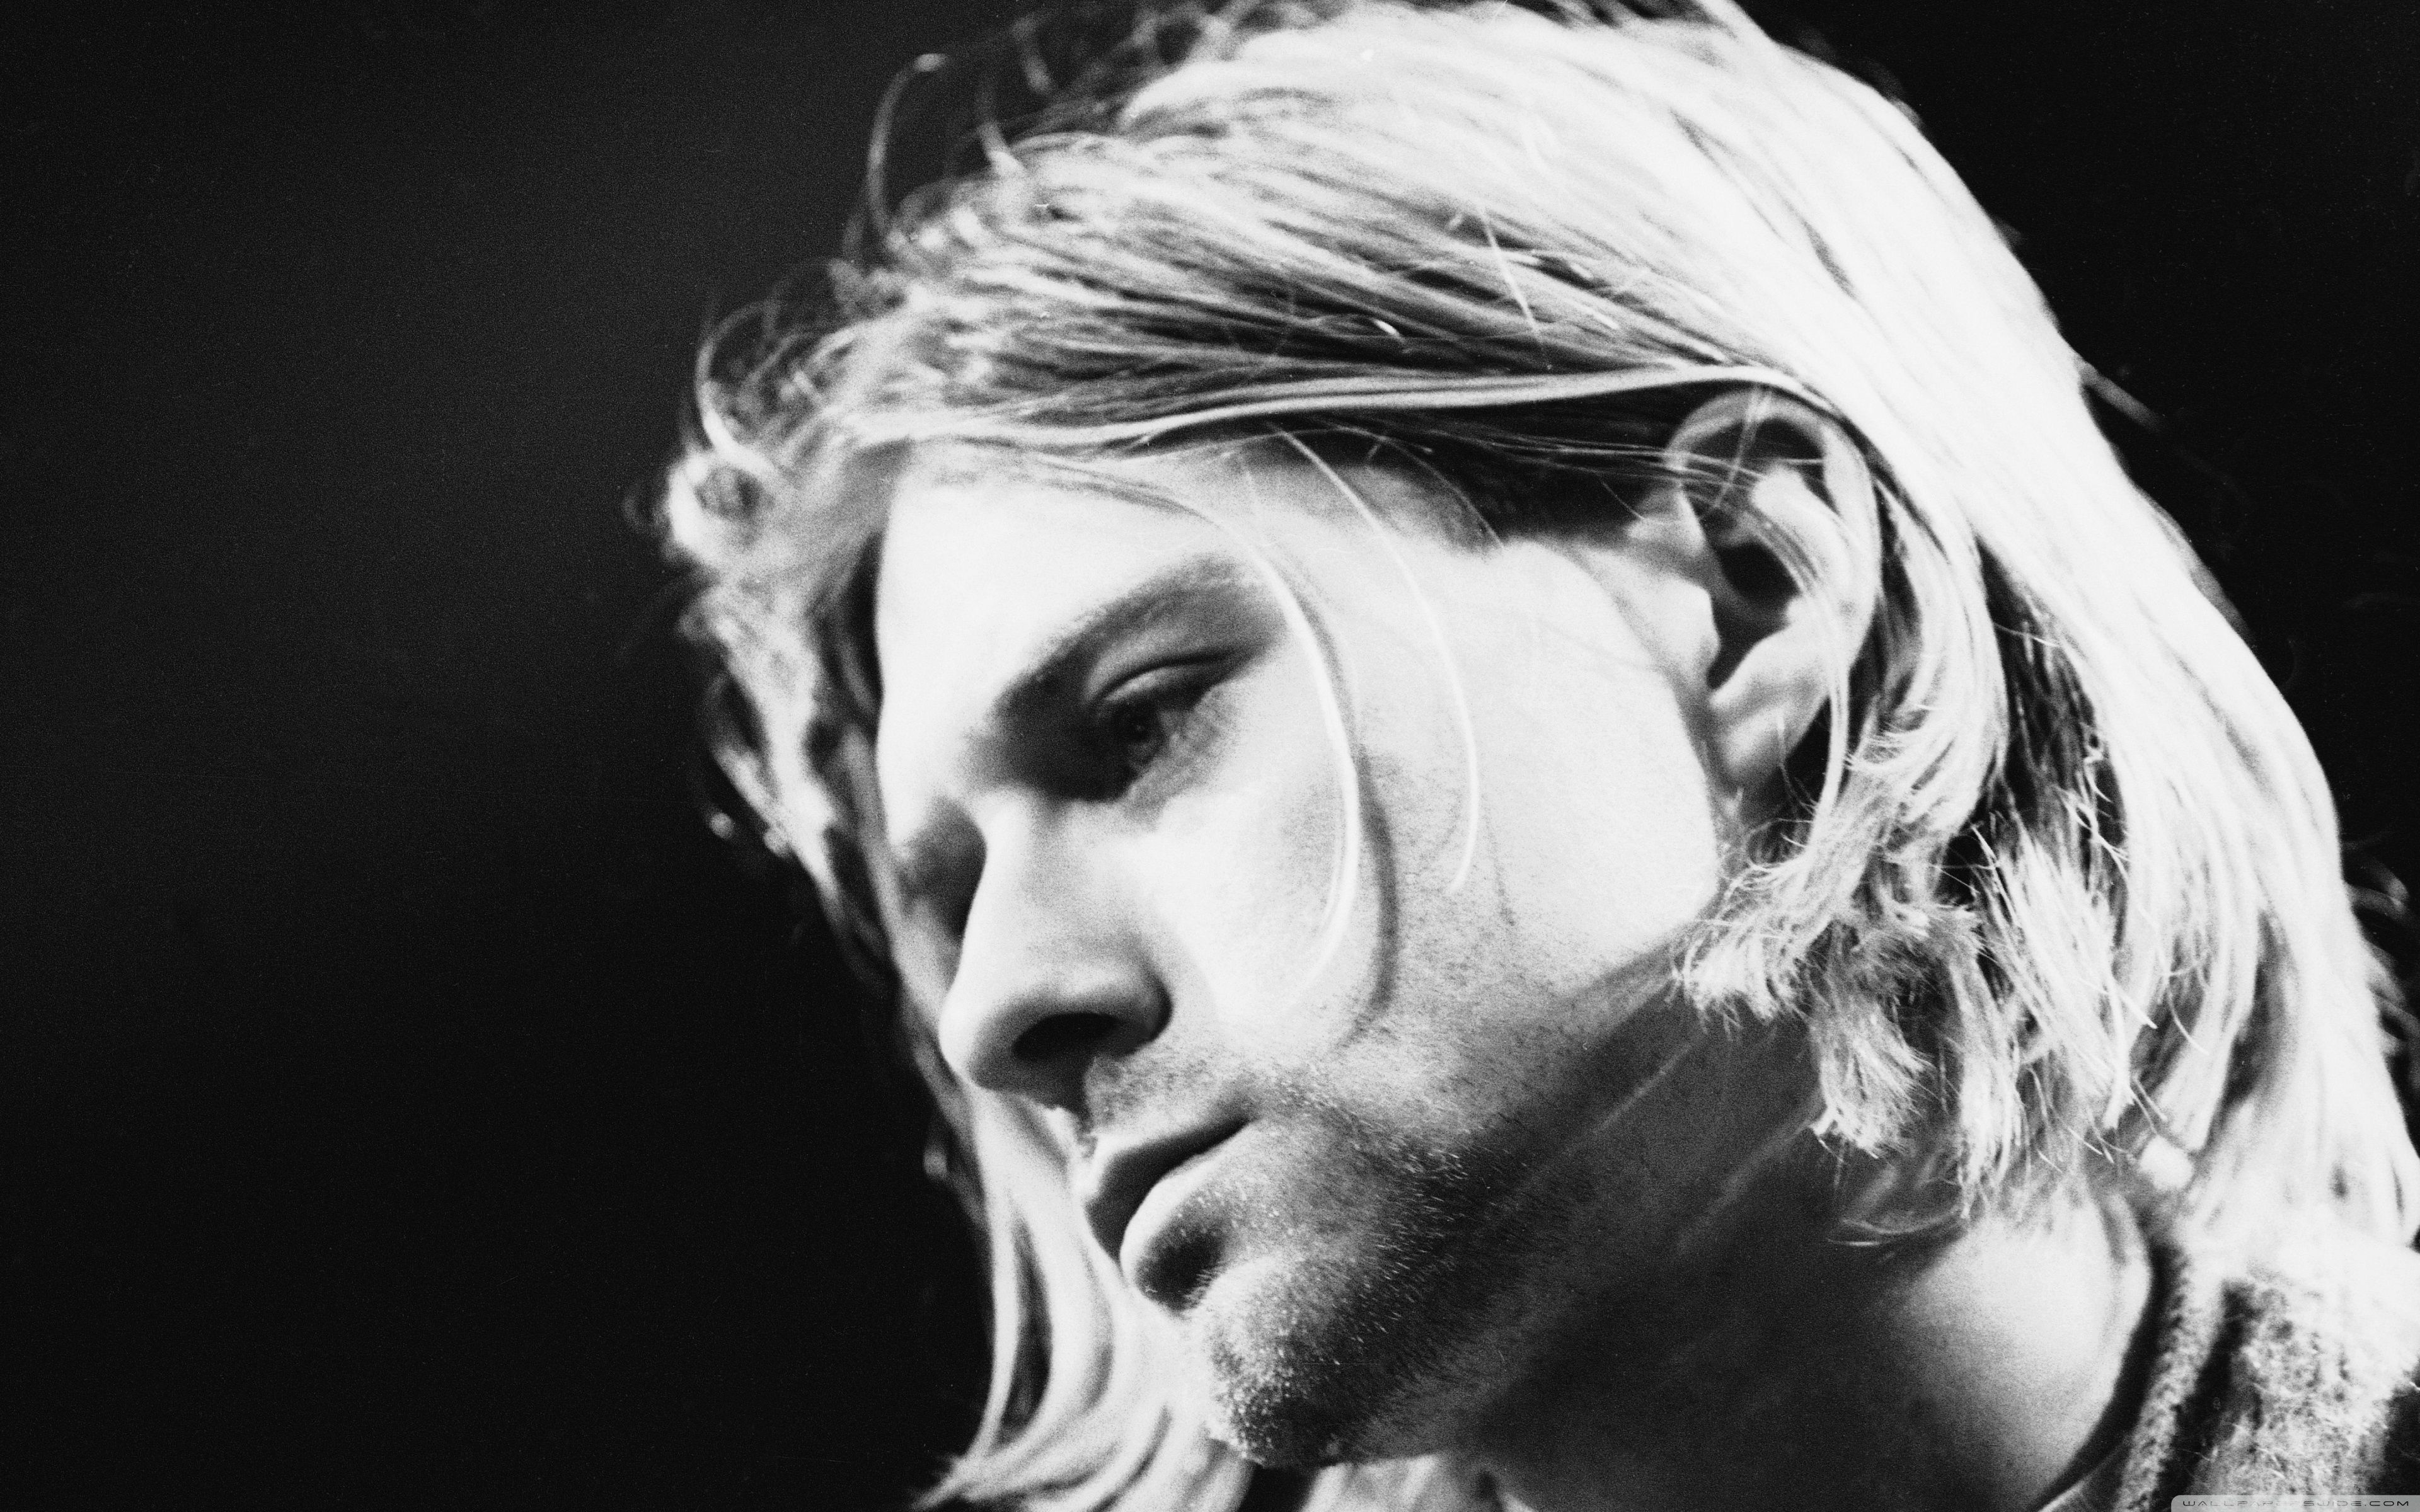 Kurt Cobain Ultra HD Desktop Background Wallpaper for: Widescreen